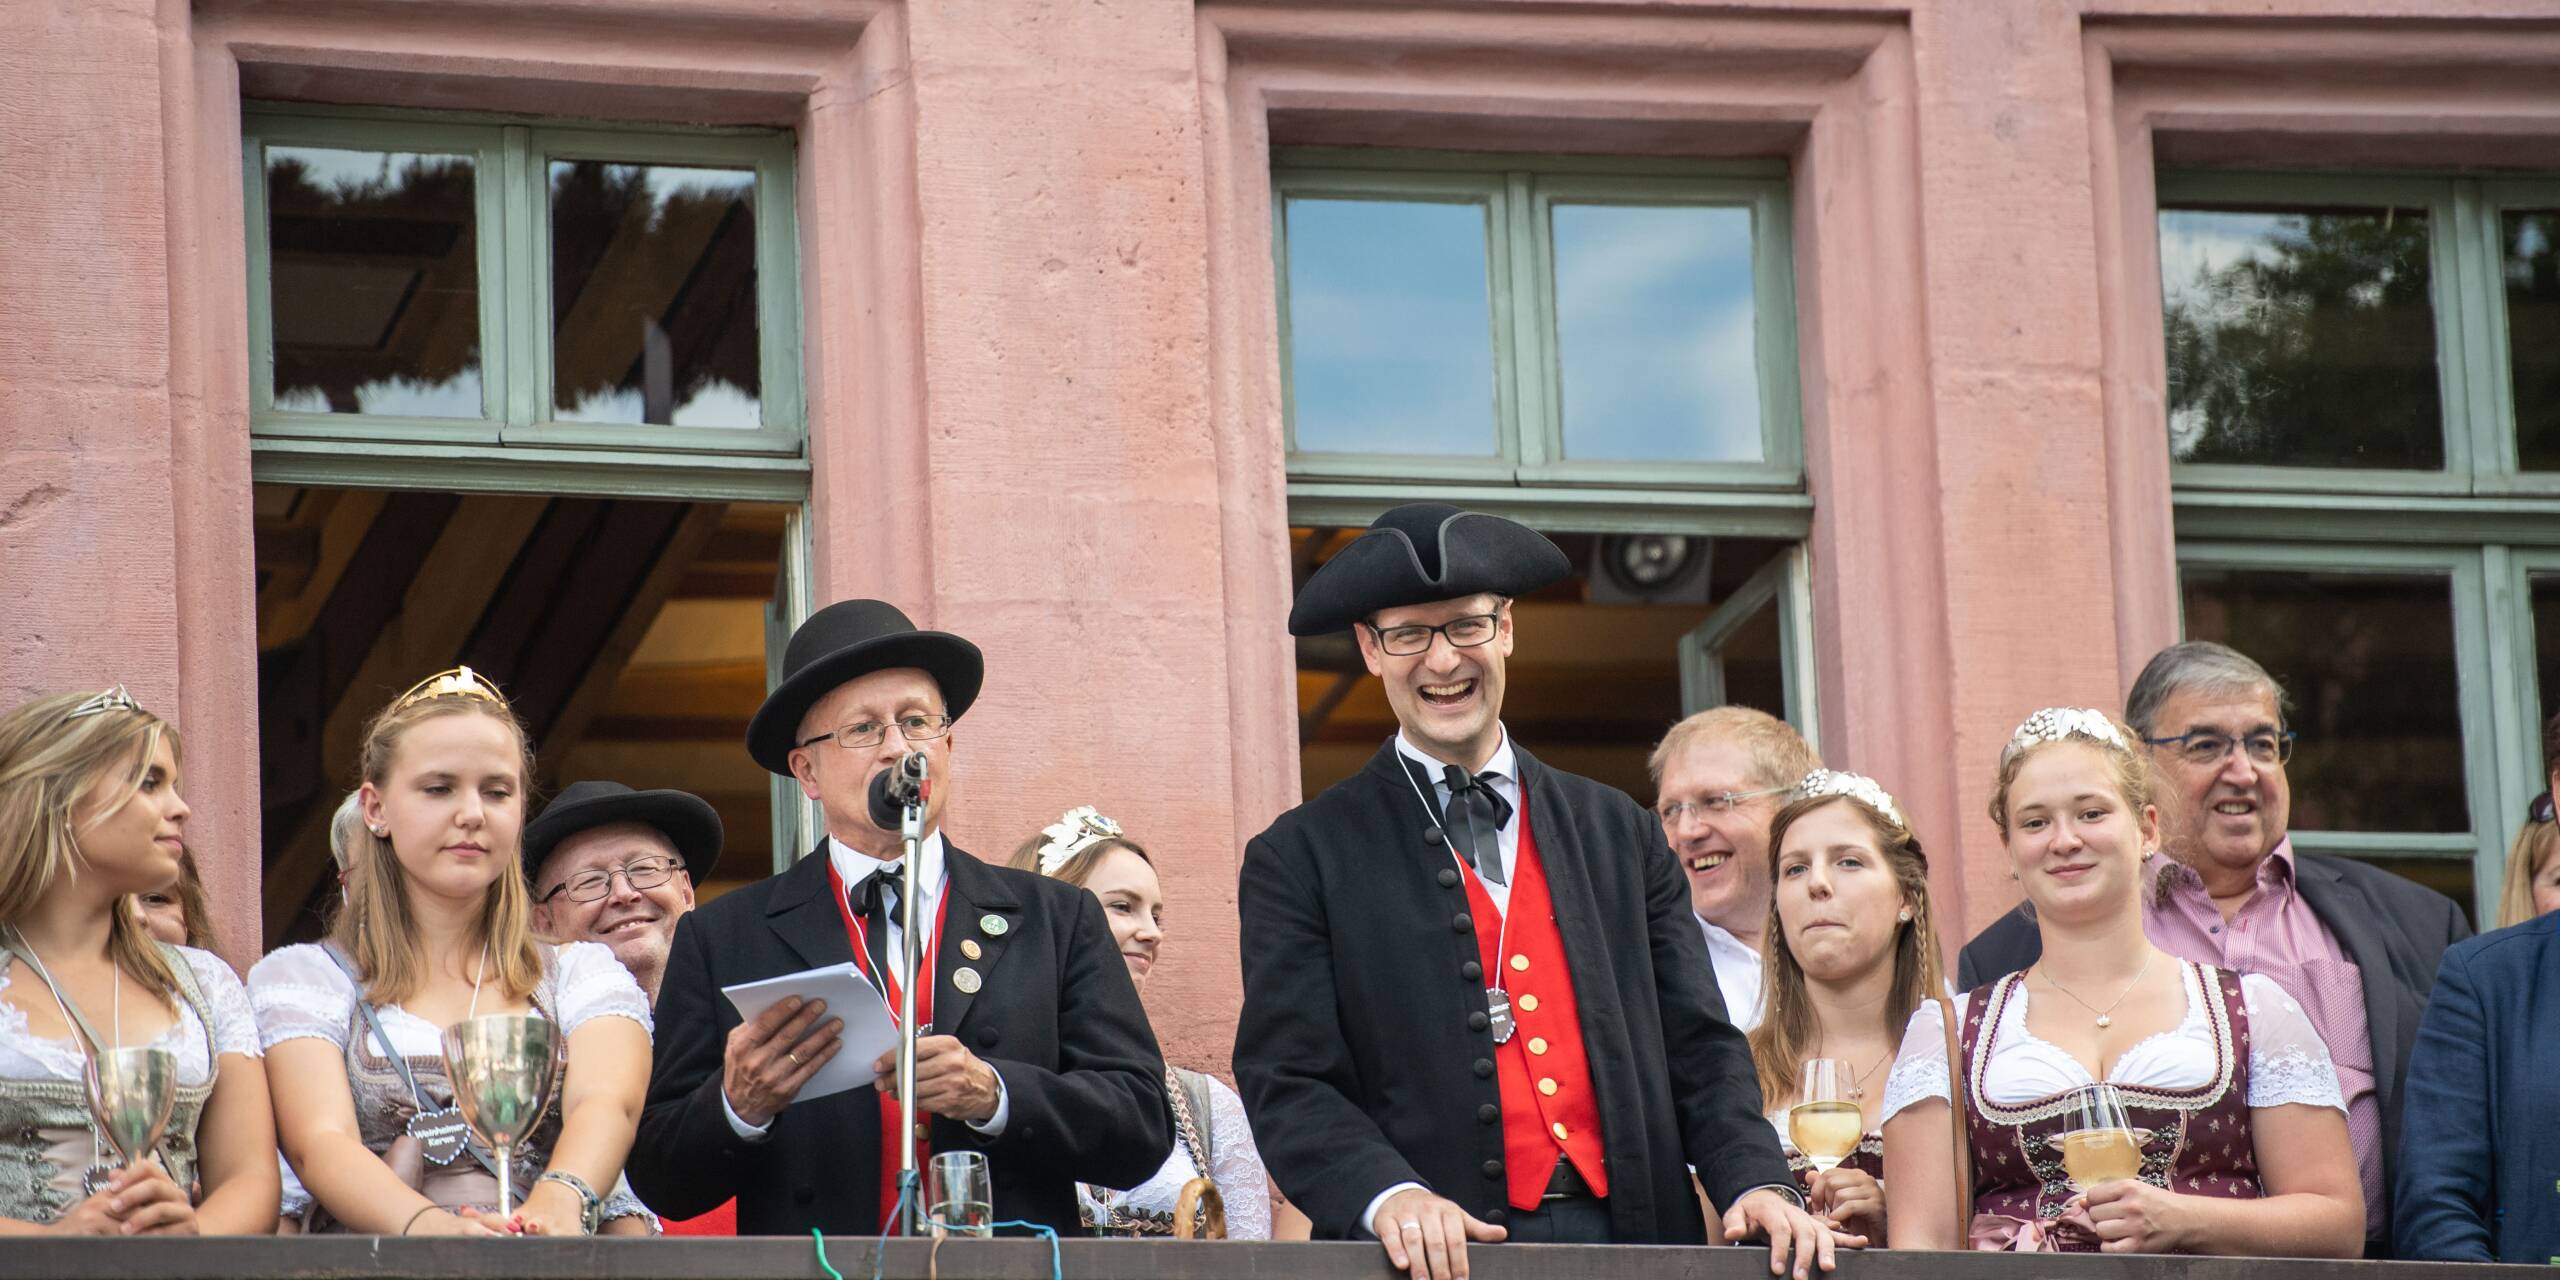 Vom Balkon des Alten Rathauses am Marktplatz in Weinheim wird die Kerwe feierlich eröffnet. Unter anderem spricht der Oberbürgermeister, aktuell ist das Manuel Just.